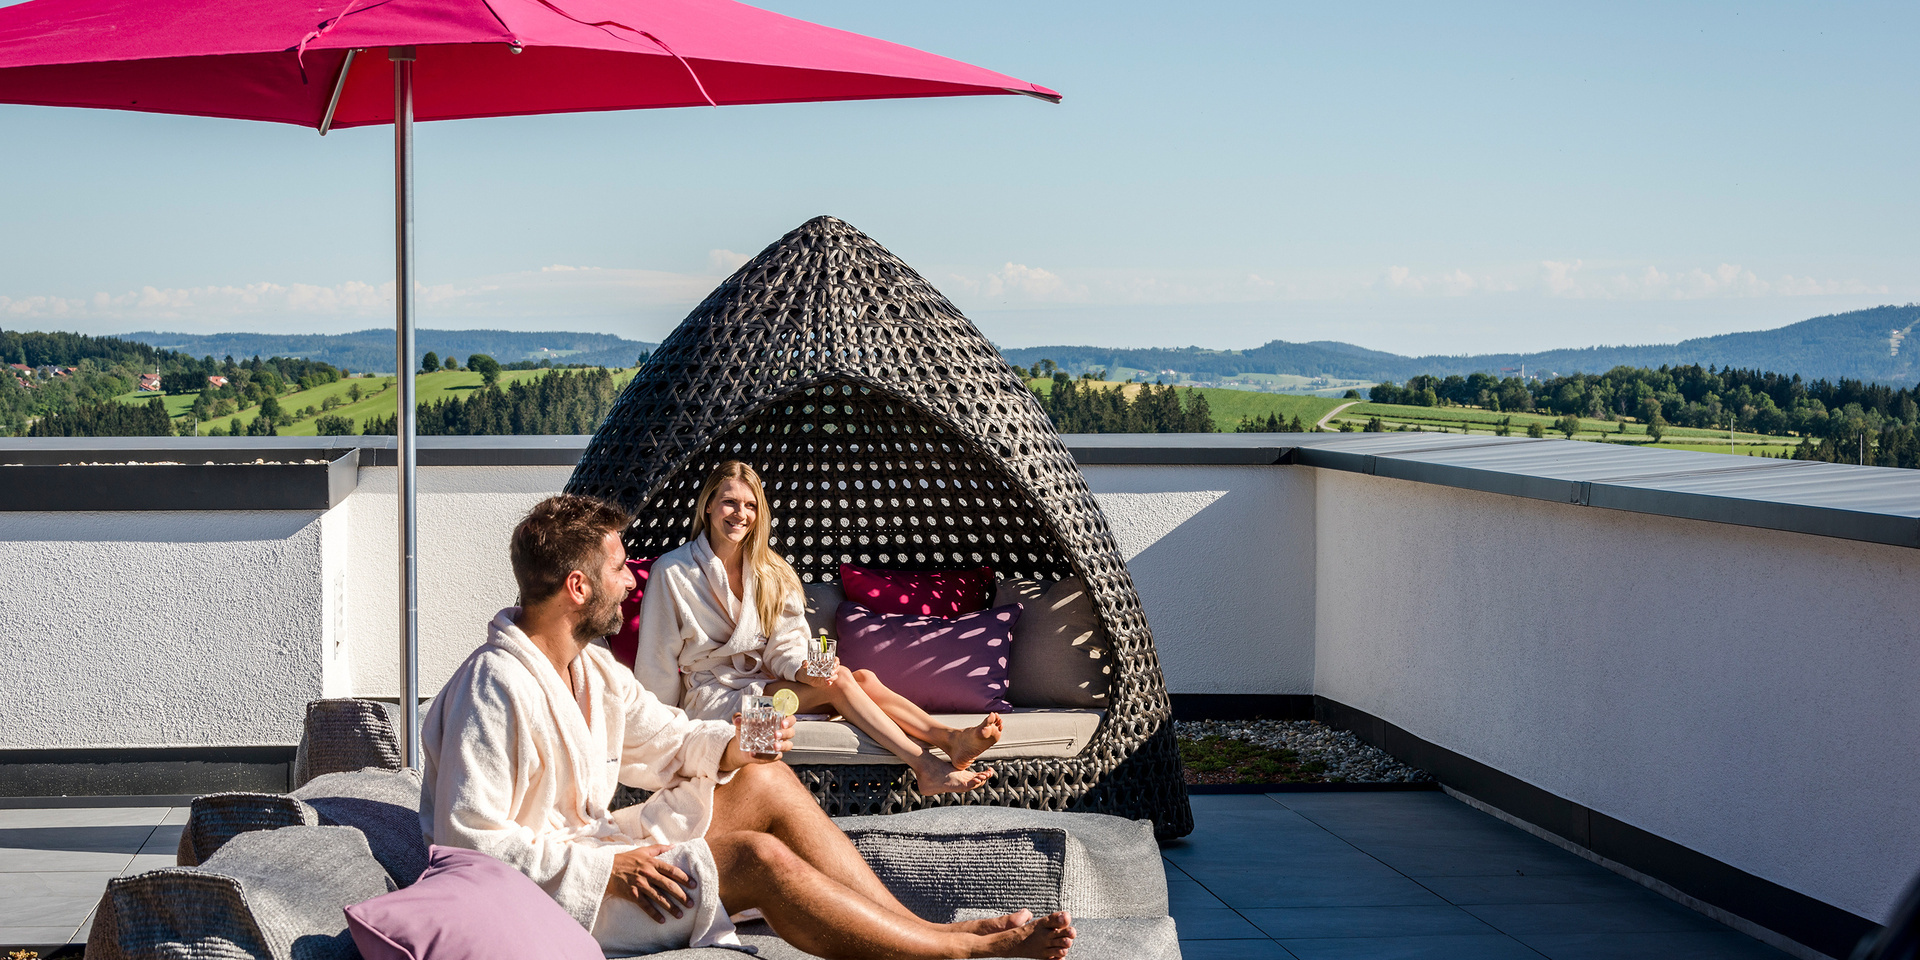 Hotel Bayerischer Wald - Wellnessurlaub in Bayern im Hotel mit Restaurant und Wellness